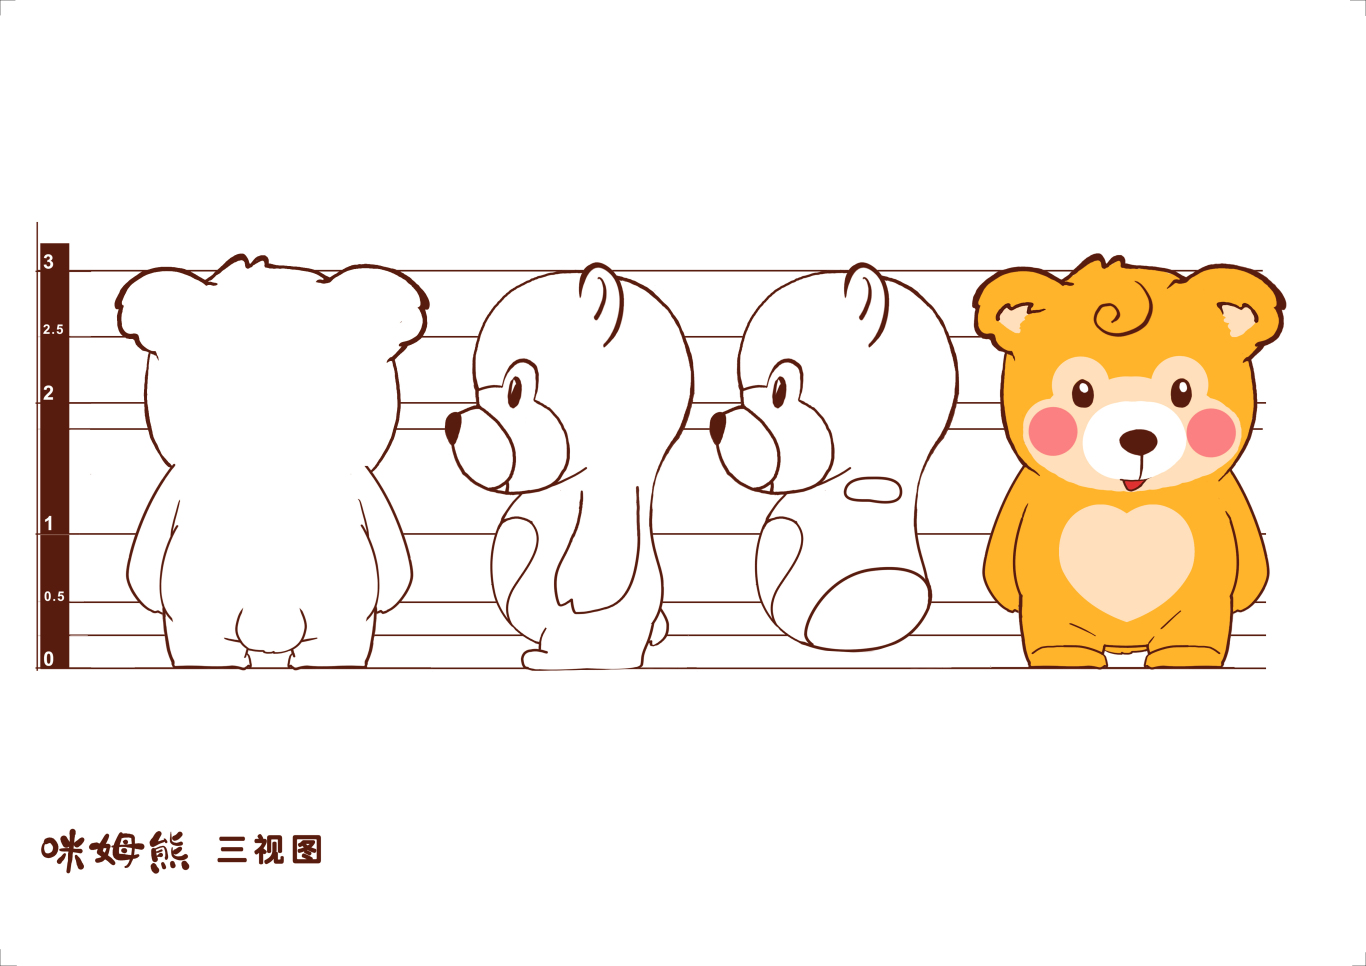 广州市妇幼卡通形象设计图2